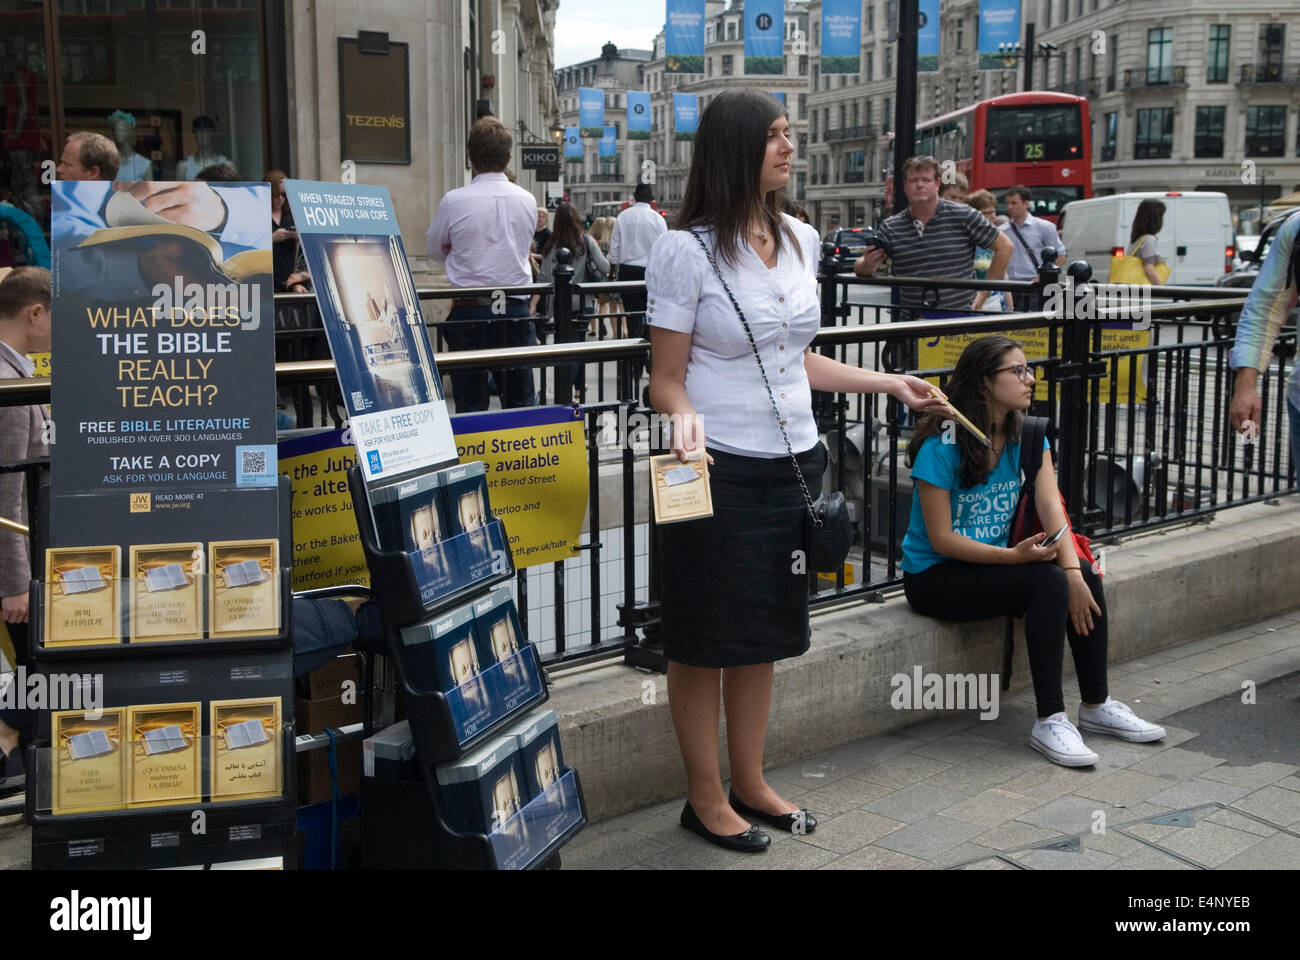 Despierto y qué significa realmente la Biblia enseña la literatura de los Testigos de Jehová que se entregó en Oxford Street Londres HOMER SYKES Foto de stock